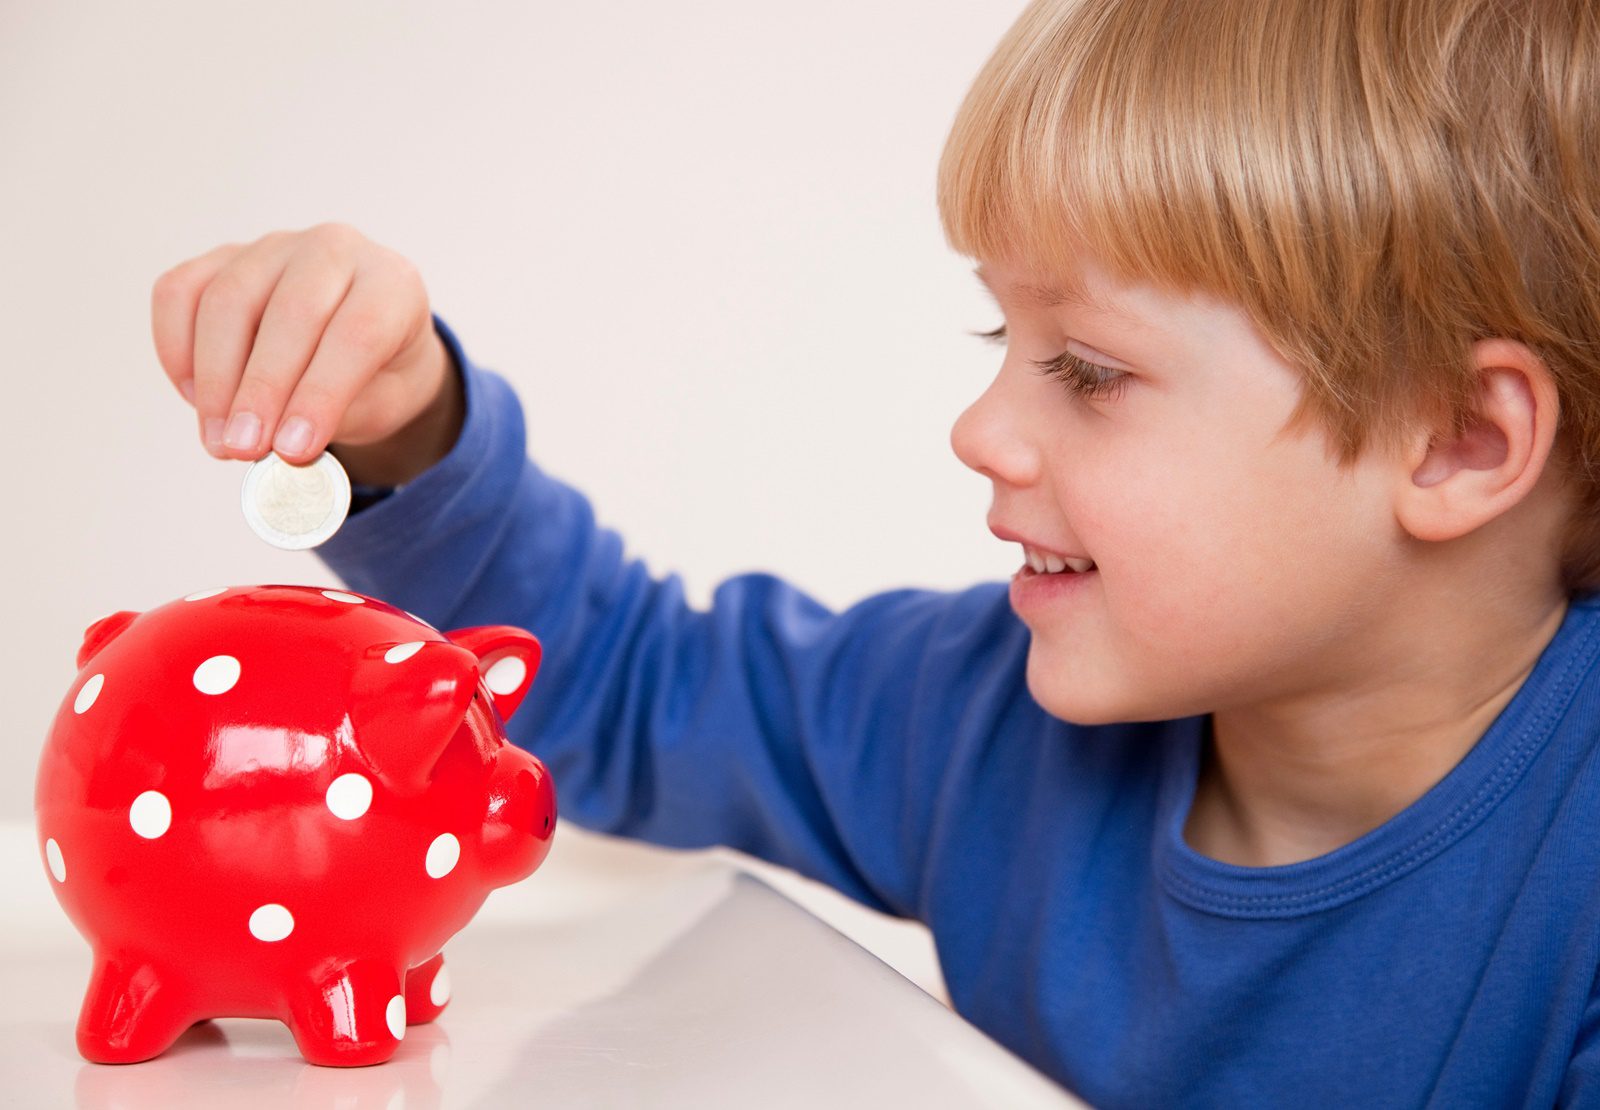 Uma criança (menino) colocando uma moeda em um cofrinho vermelho com bolinhas brancas